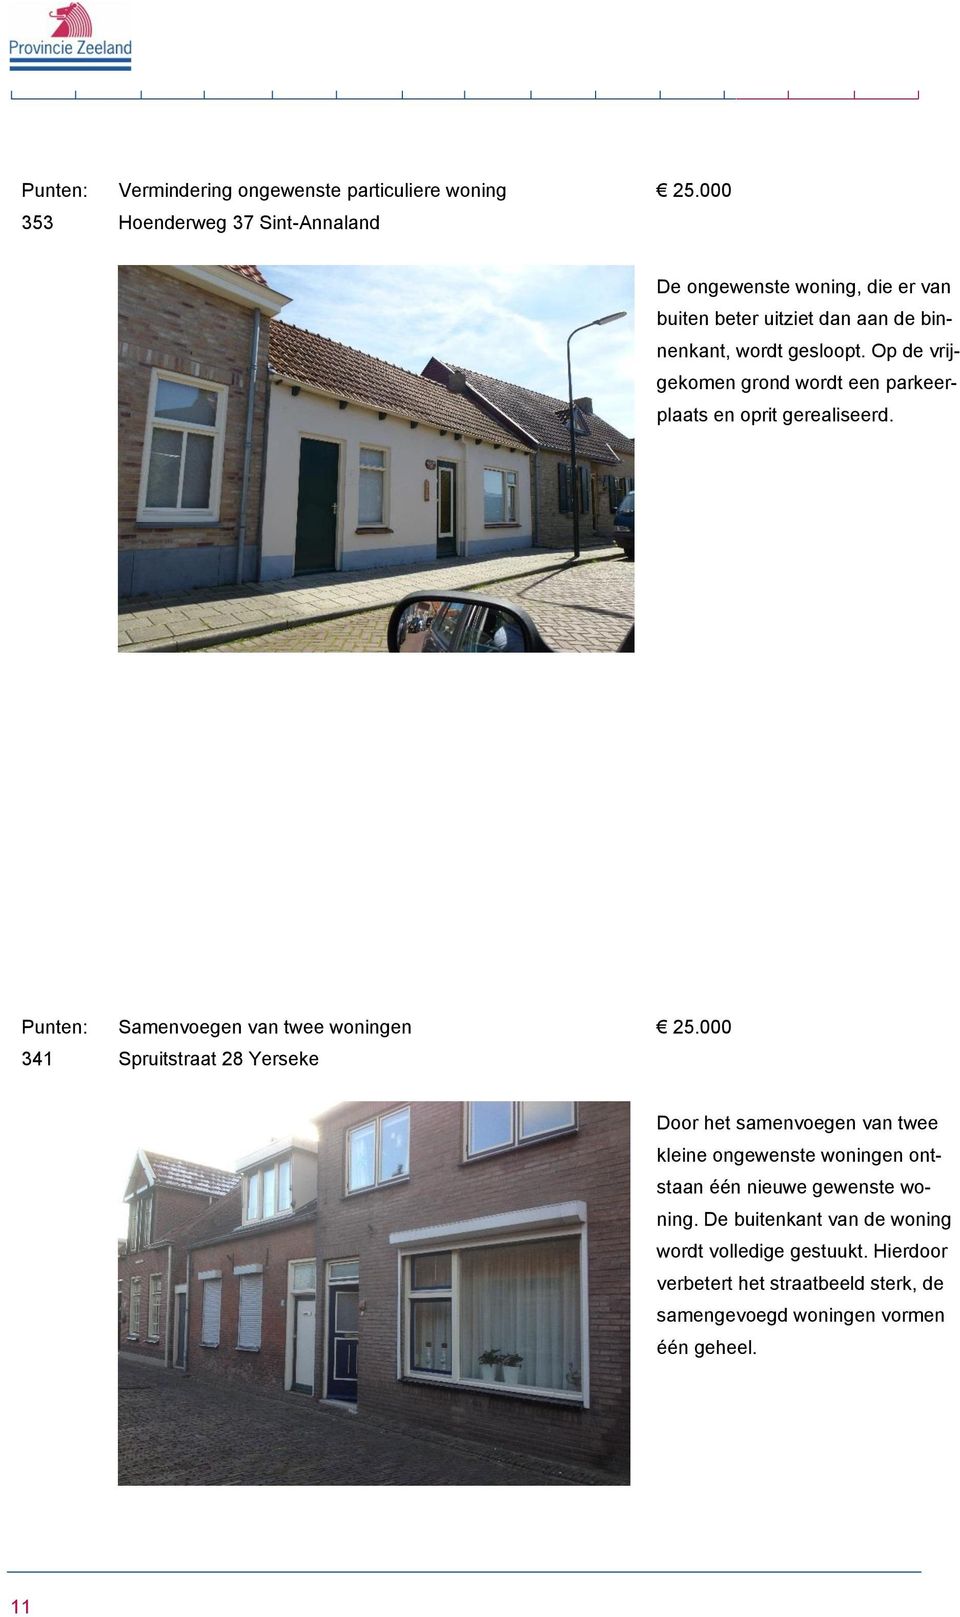 341 Samenvoegen van twee woningen Spruitstraat 28 Yerseke Door het samenvoegen van twee kleine ongewenste woningen ontstaan één